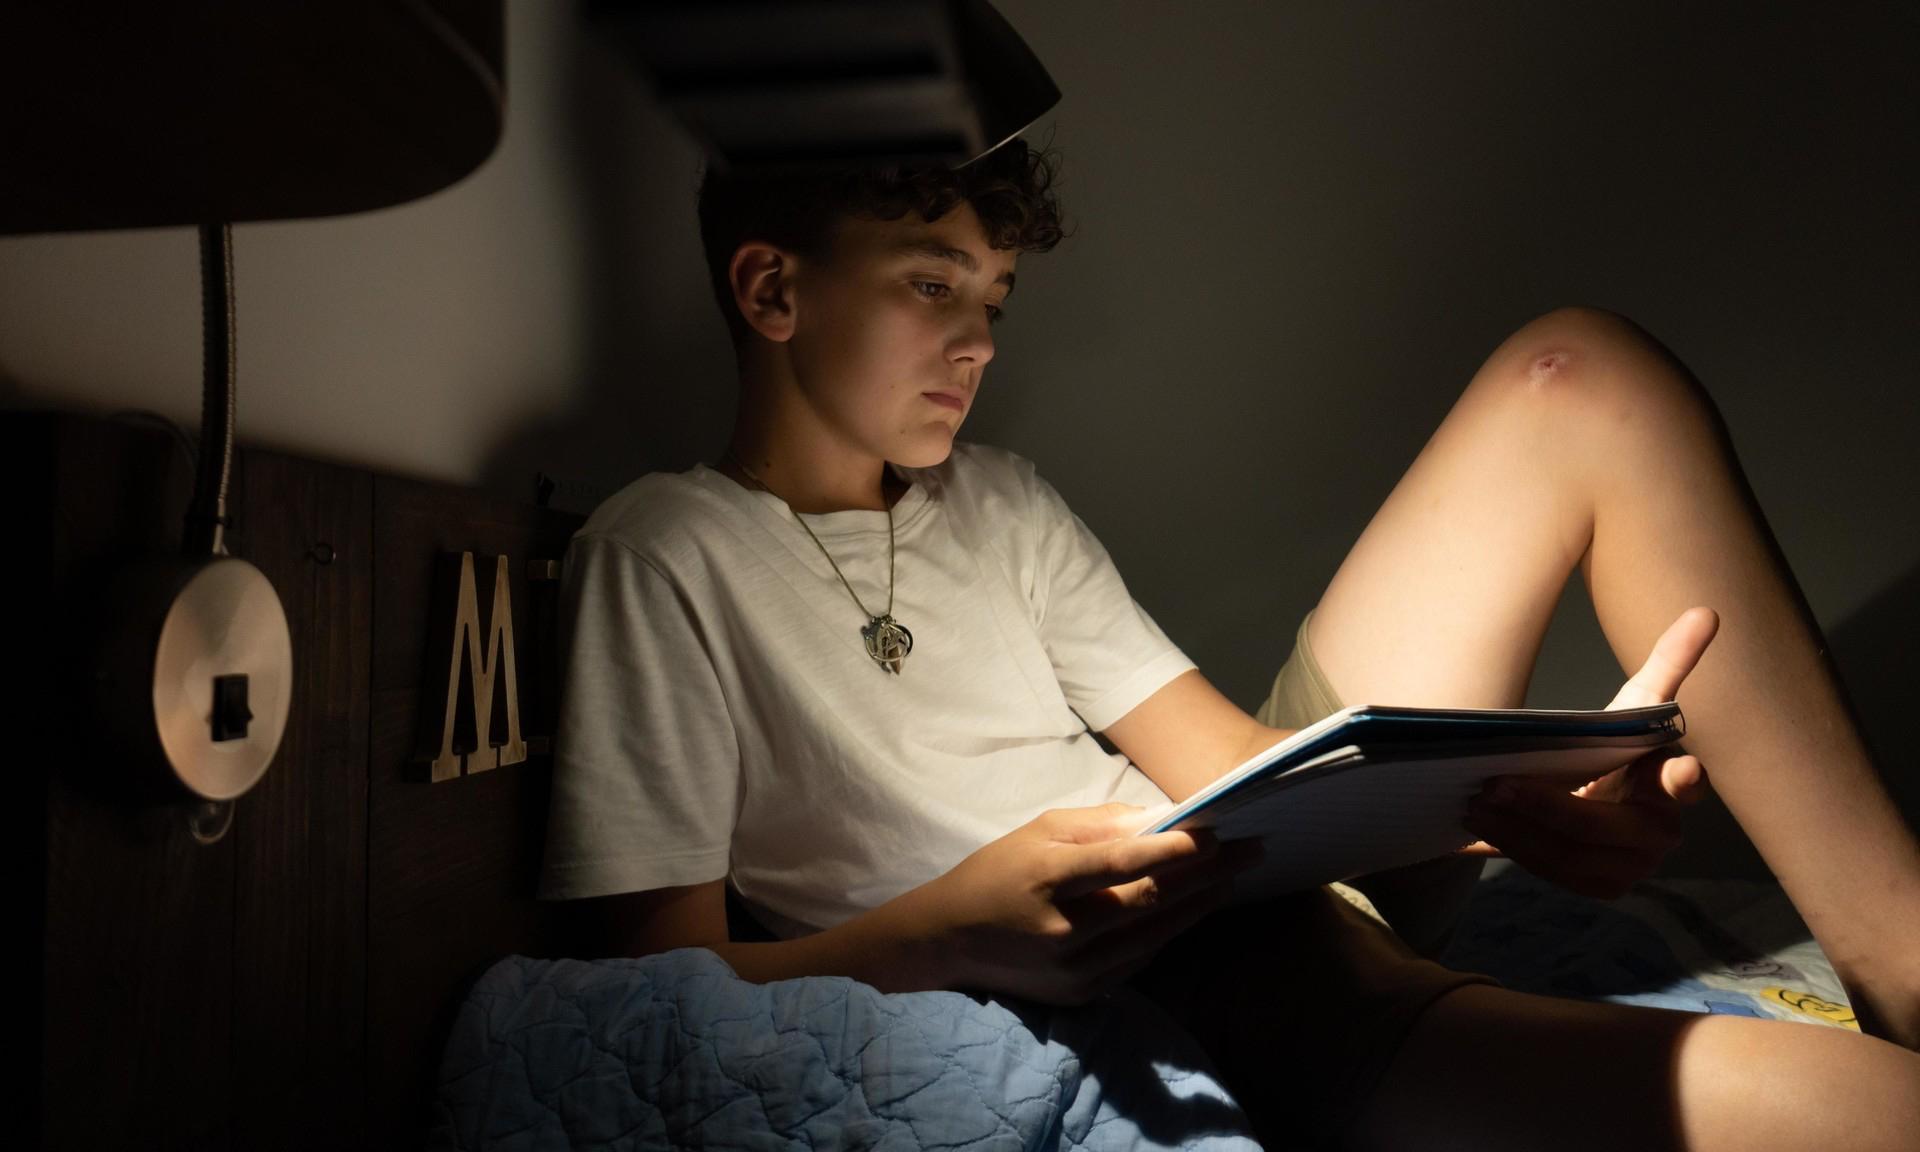 «12-летний сын боится темноты. Как помочь ему?»